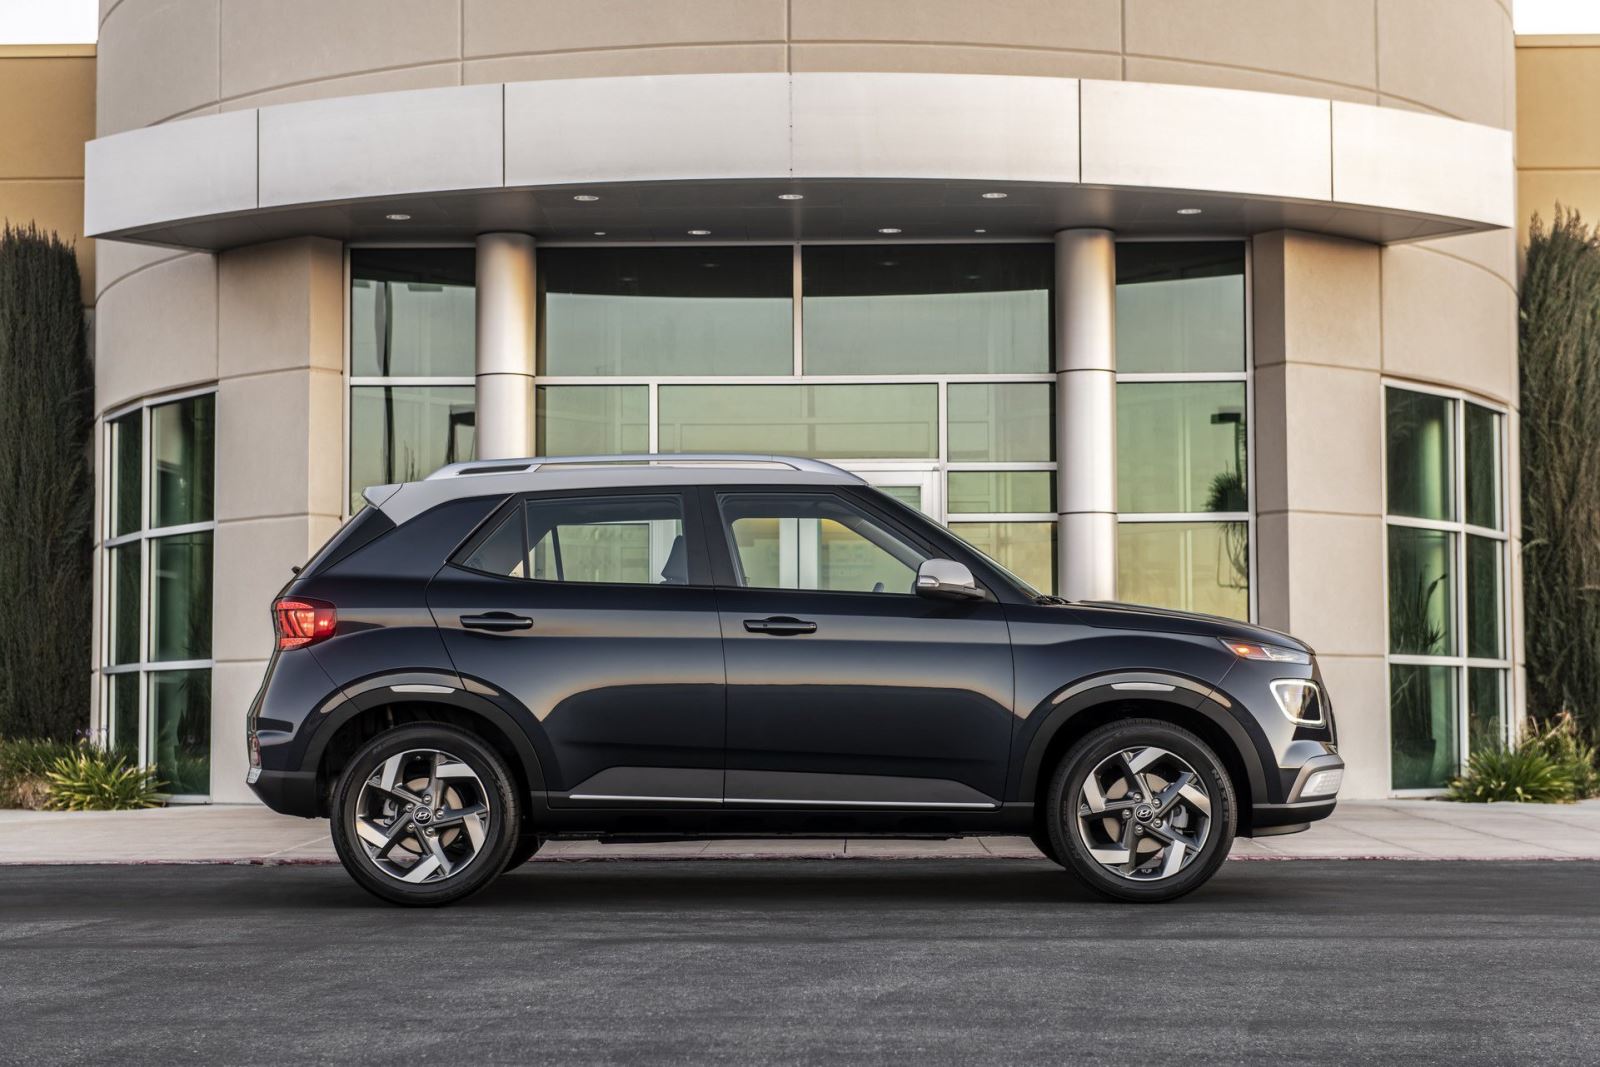 7 điểm cần biết về Hyundai Venue - SUV mới nhìn như Audi nhưng lại lấy cảm hứng Range Rover 6